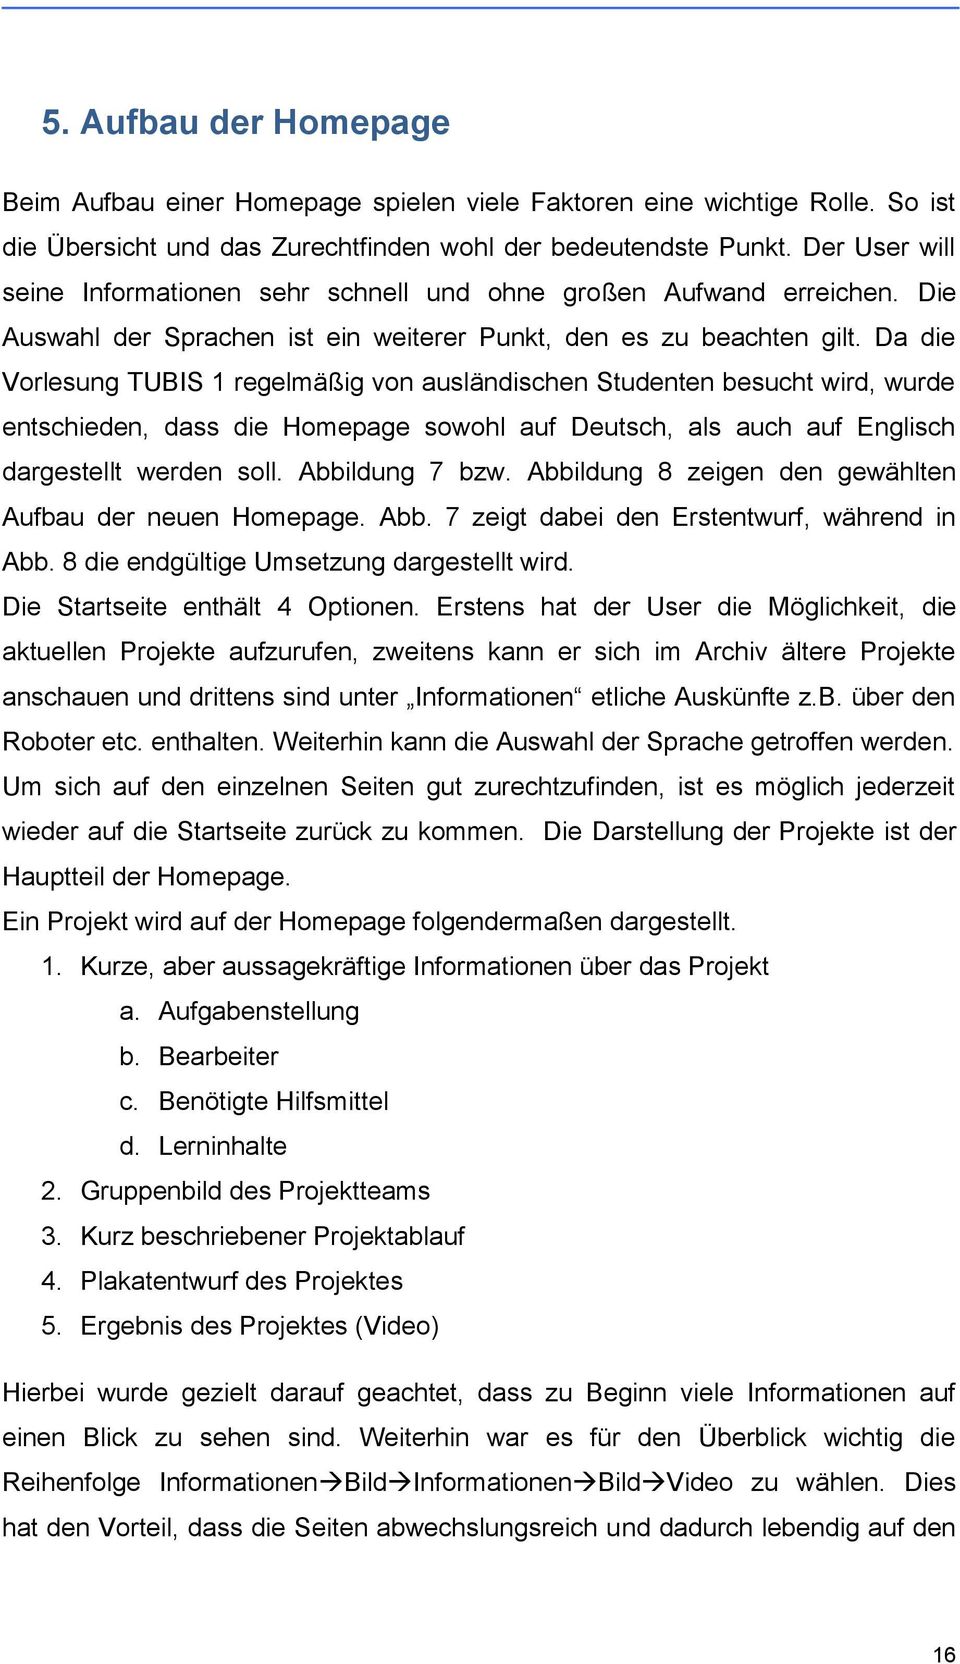 Da die Vorlesung TUBIS 1 regelmäßig von ausländischen Studenten besucht wird, wurde entschieden, dass die Homepage sowohl auf Deutsch, als auch auf Englisch dargestellt werden soll. Abbildung 7 bzw.